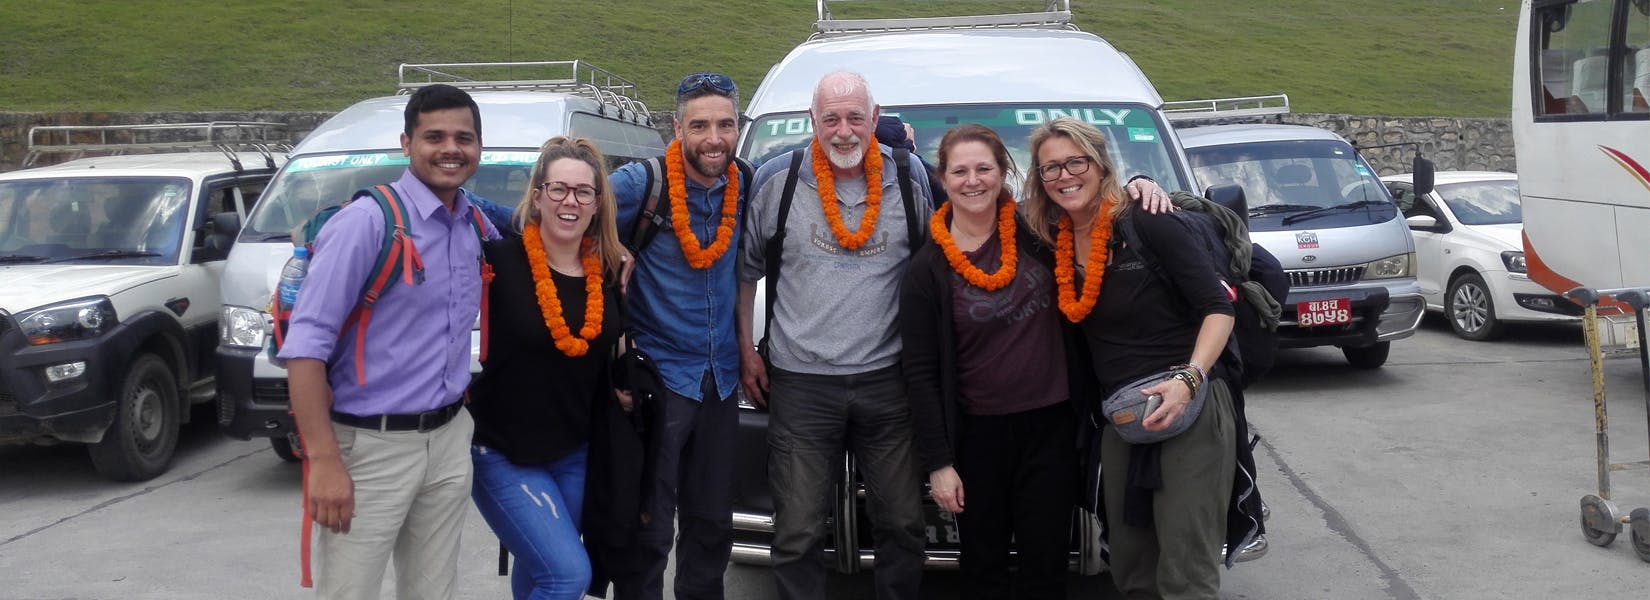 Kathmandu Pokhara Yoga Tour - <span class="font-light">7 days</span>